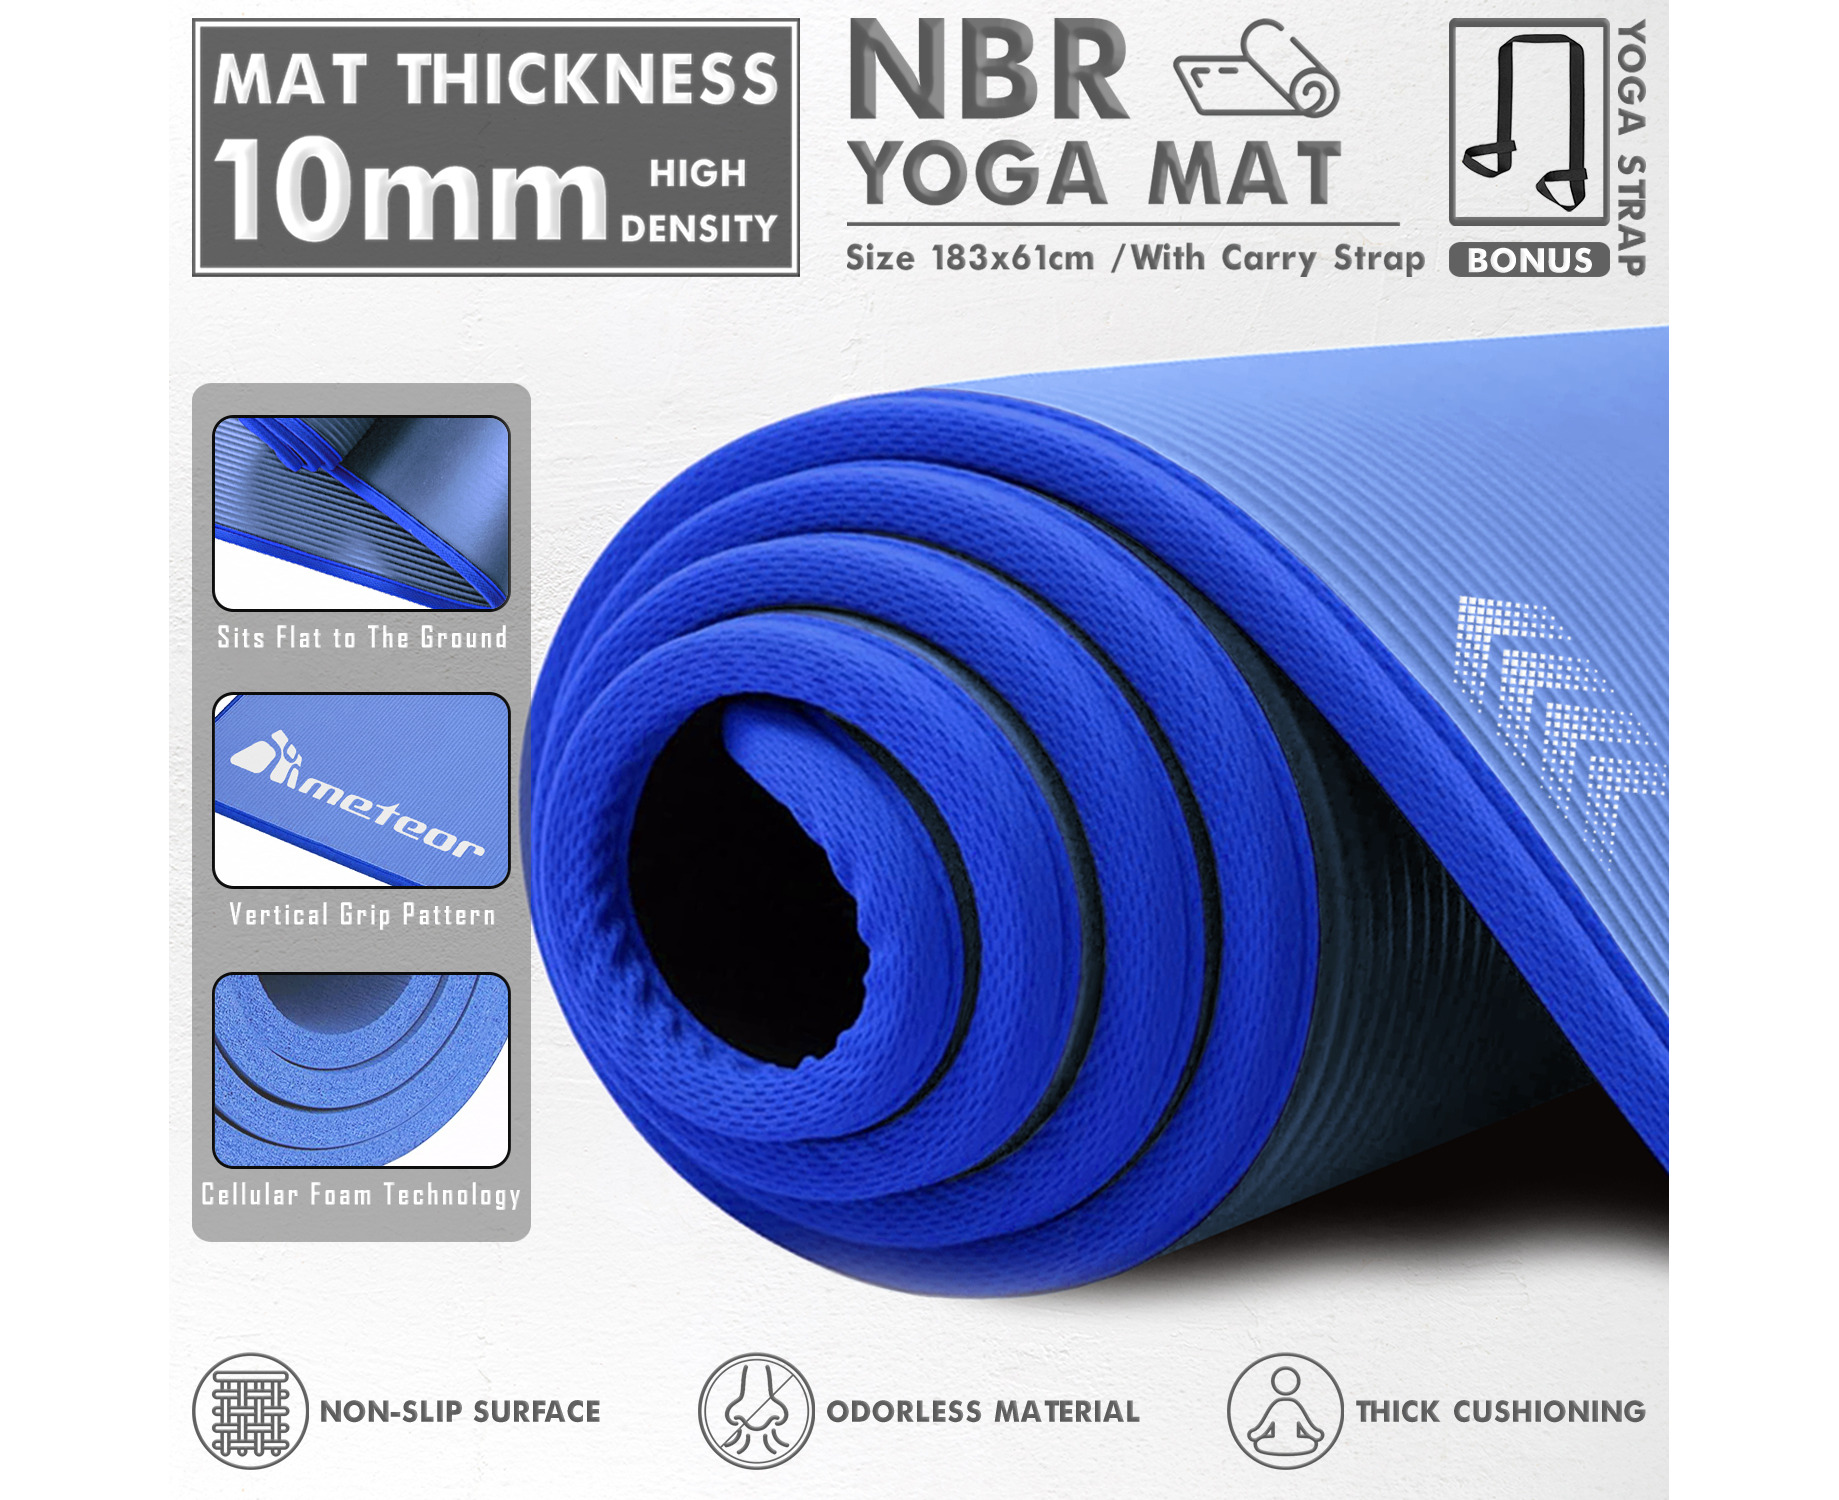 METEOR Non-slip Yoga Mat,Thick Yoga Mat,NBR Yoga Mat,Exercise Mat